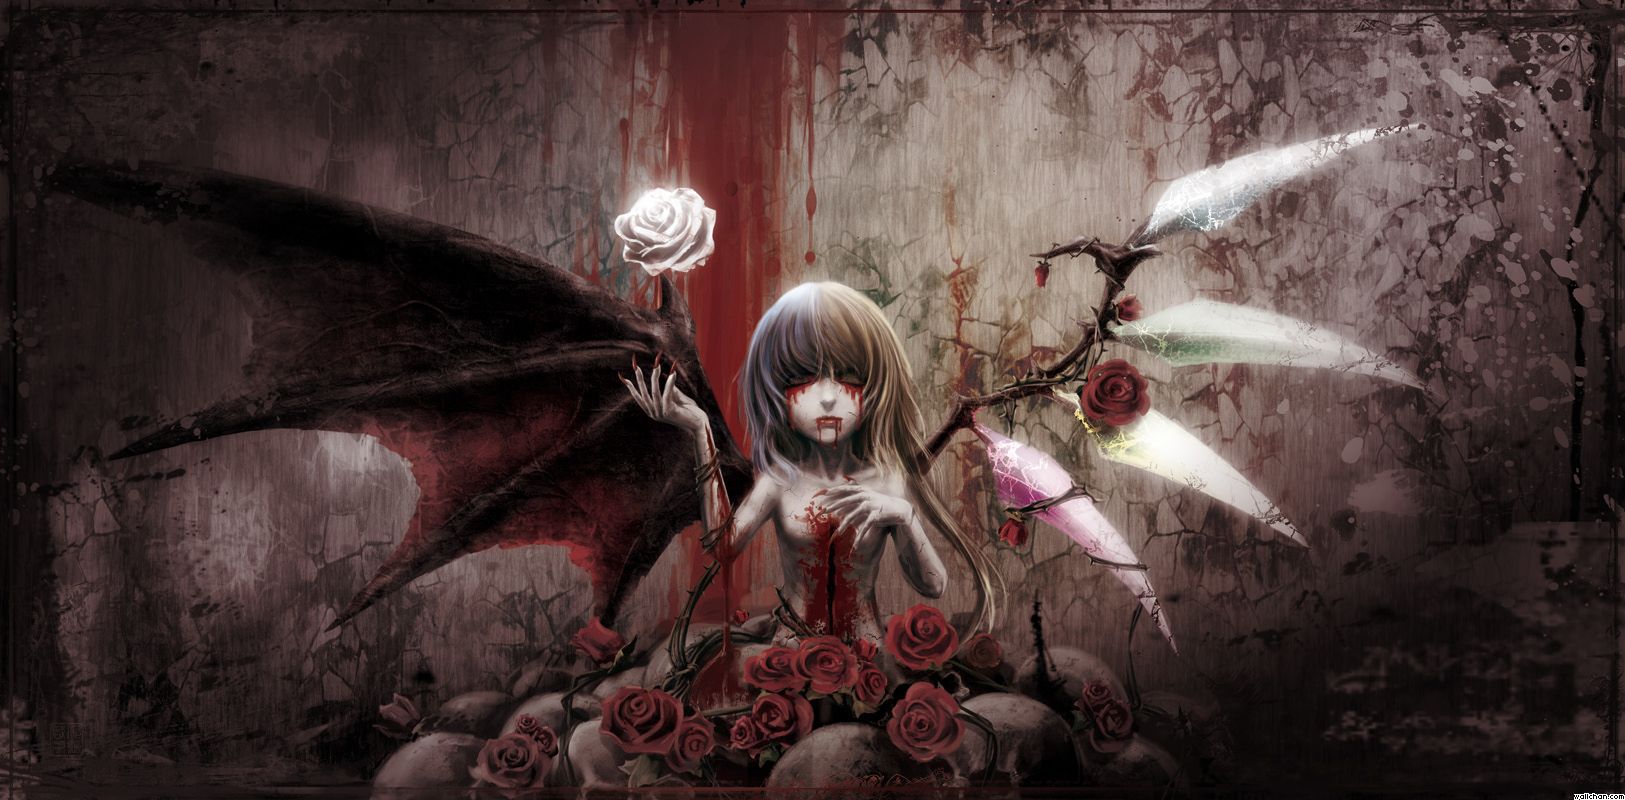 44+] Demon Girl Wallpaper - WallpaperSafari